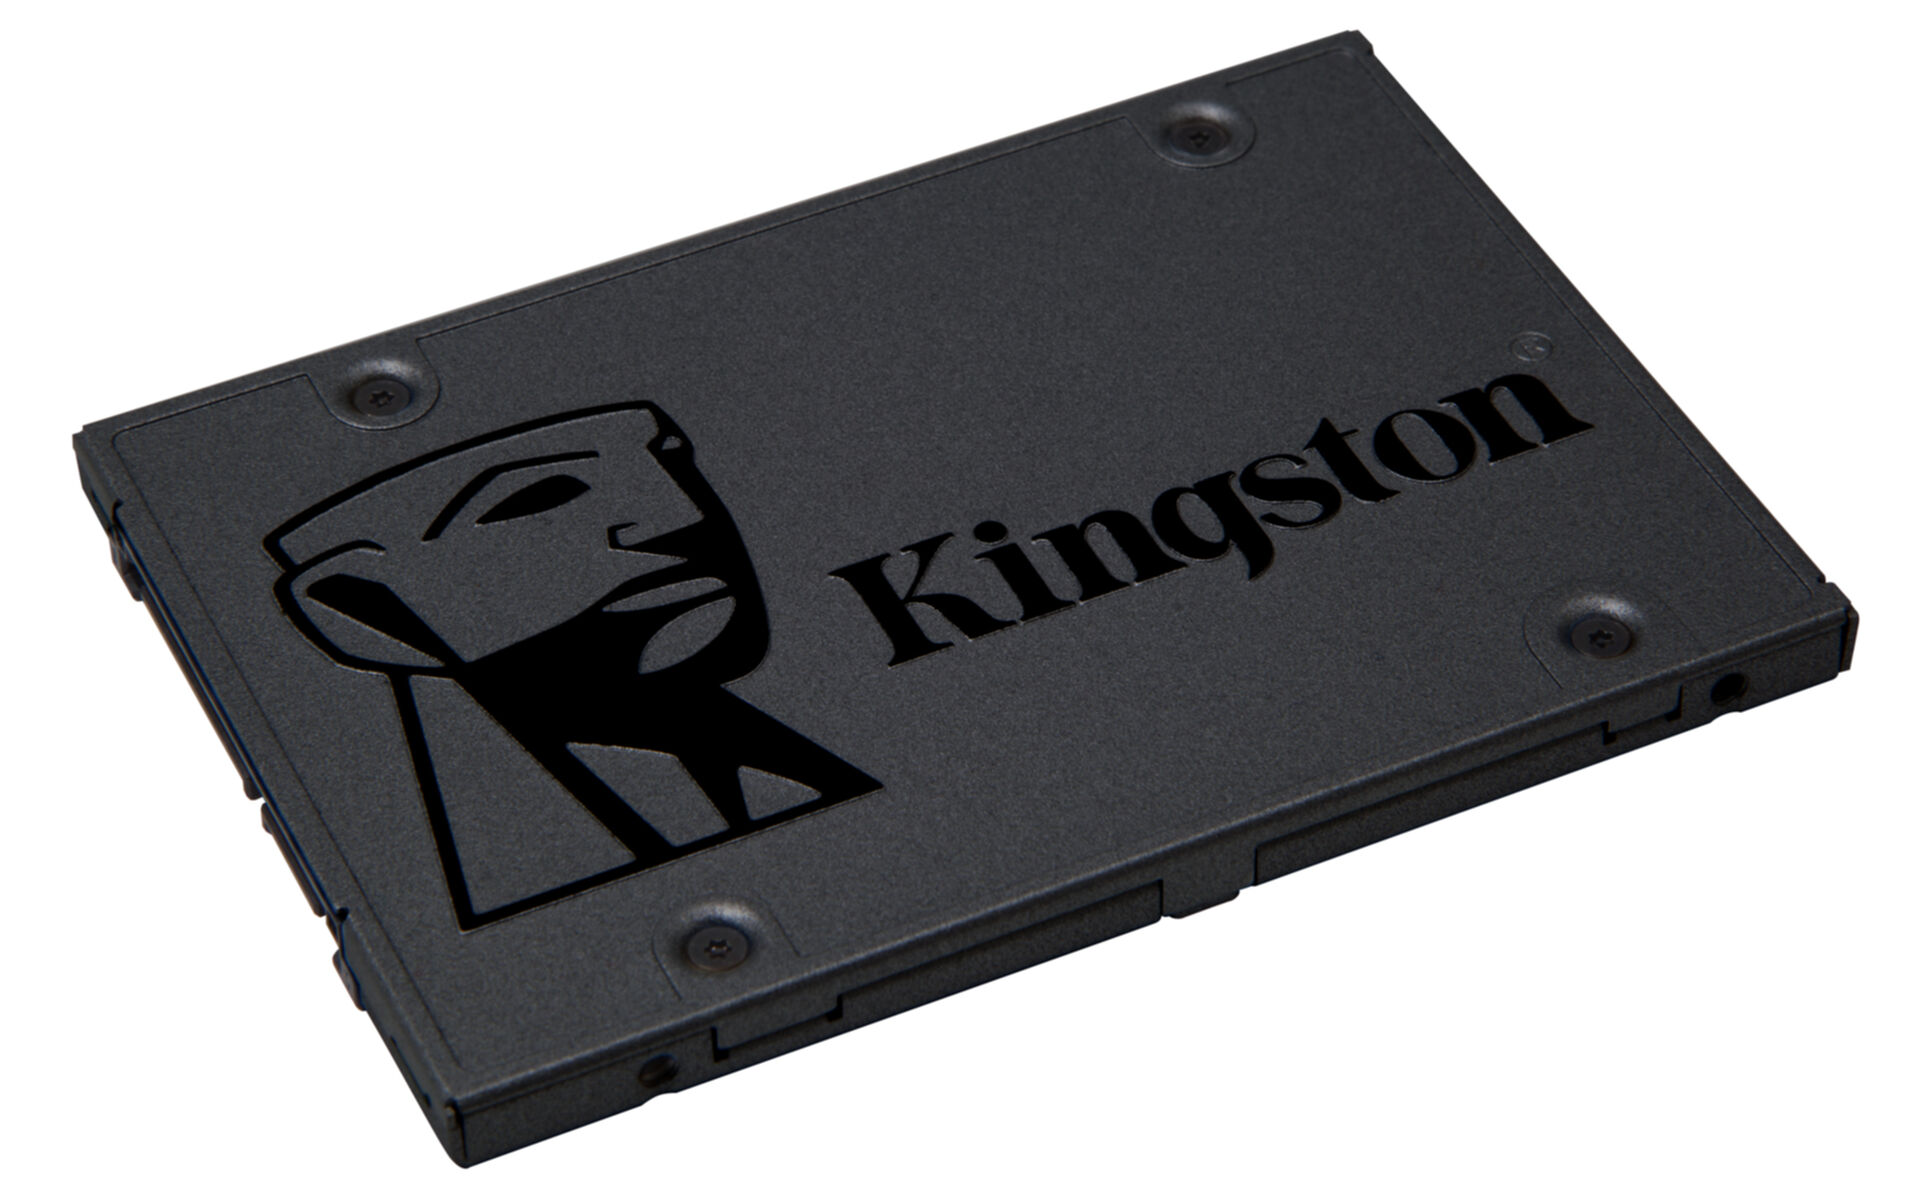 KINGSTON A400, 240 GB, 2,5 intern Zoll, SSD